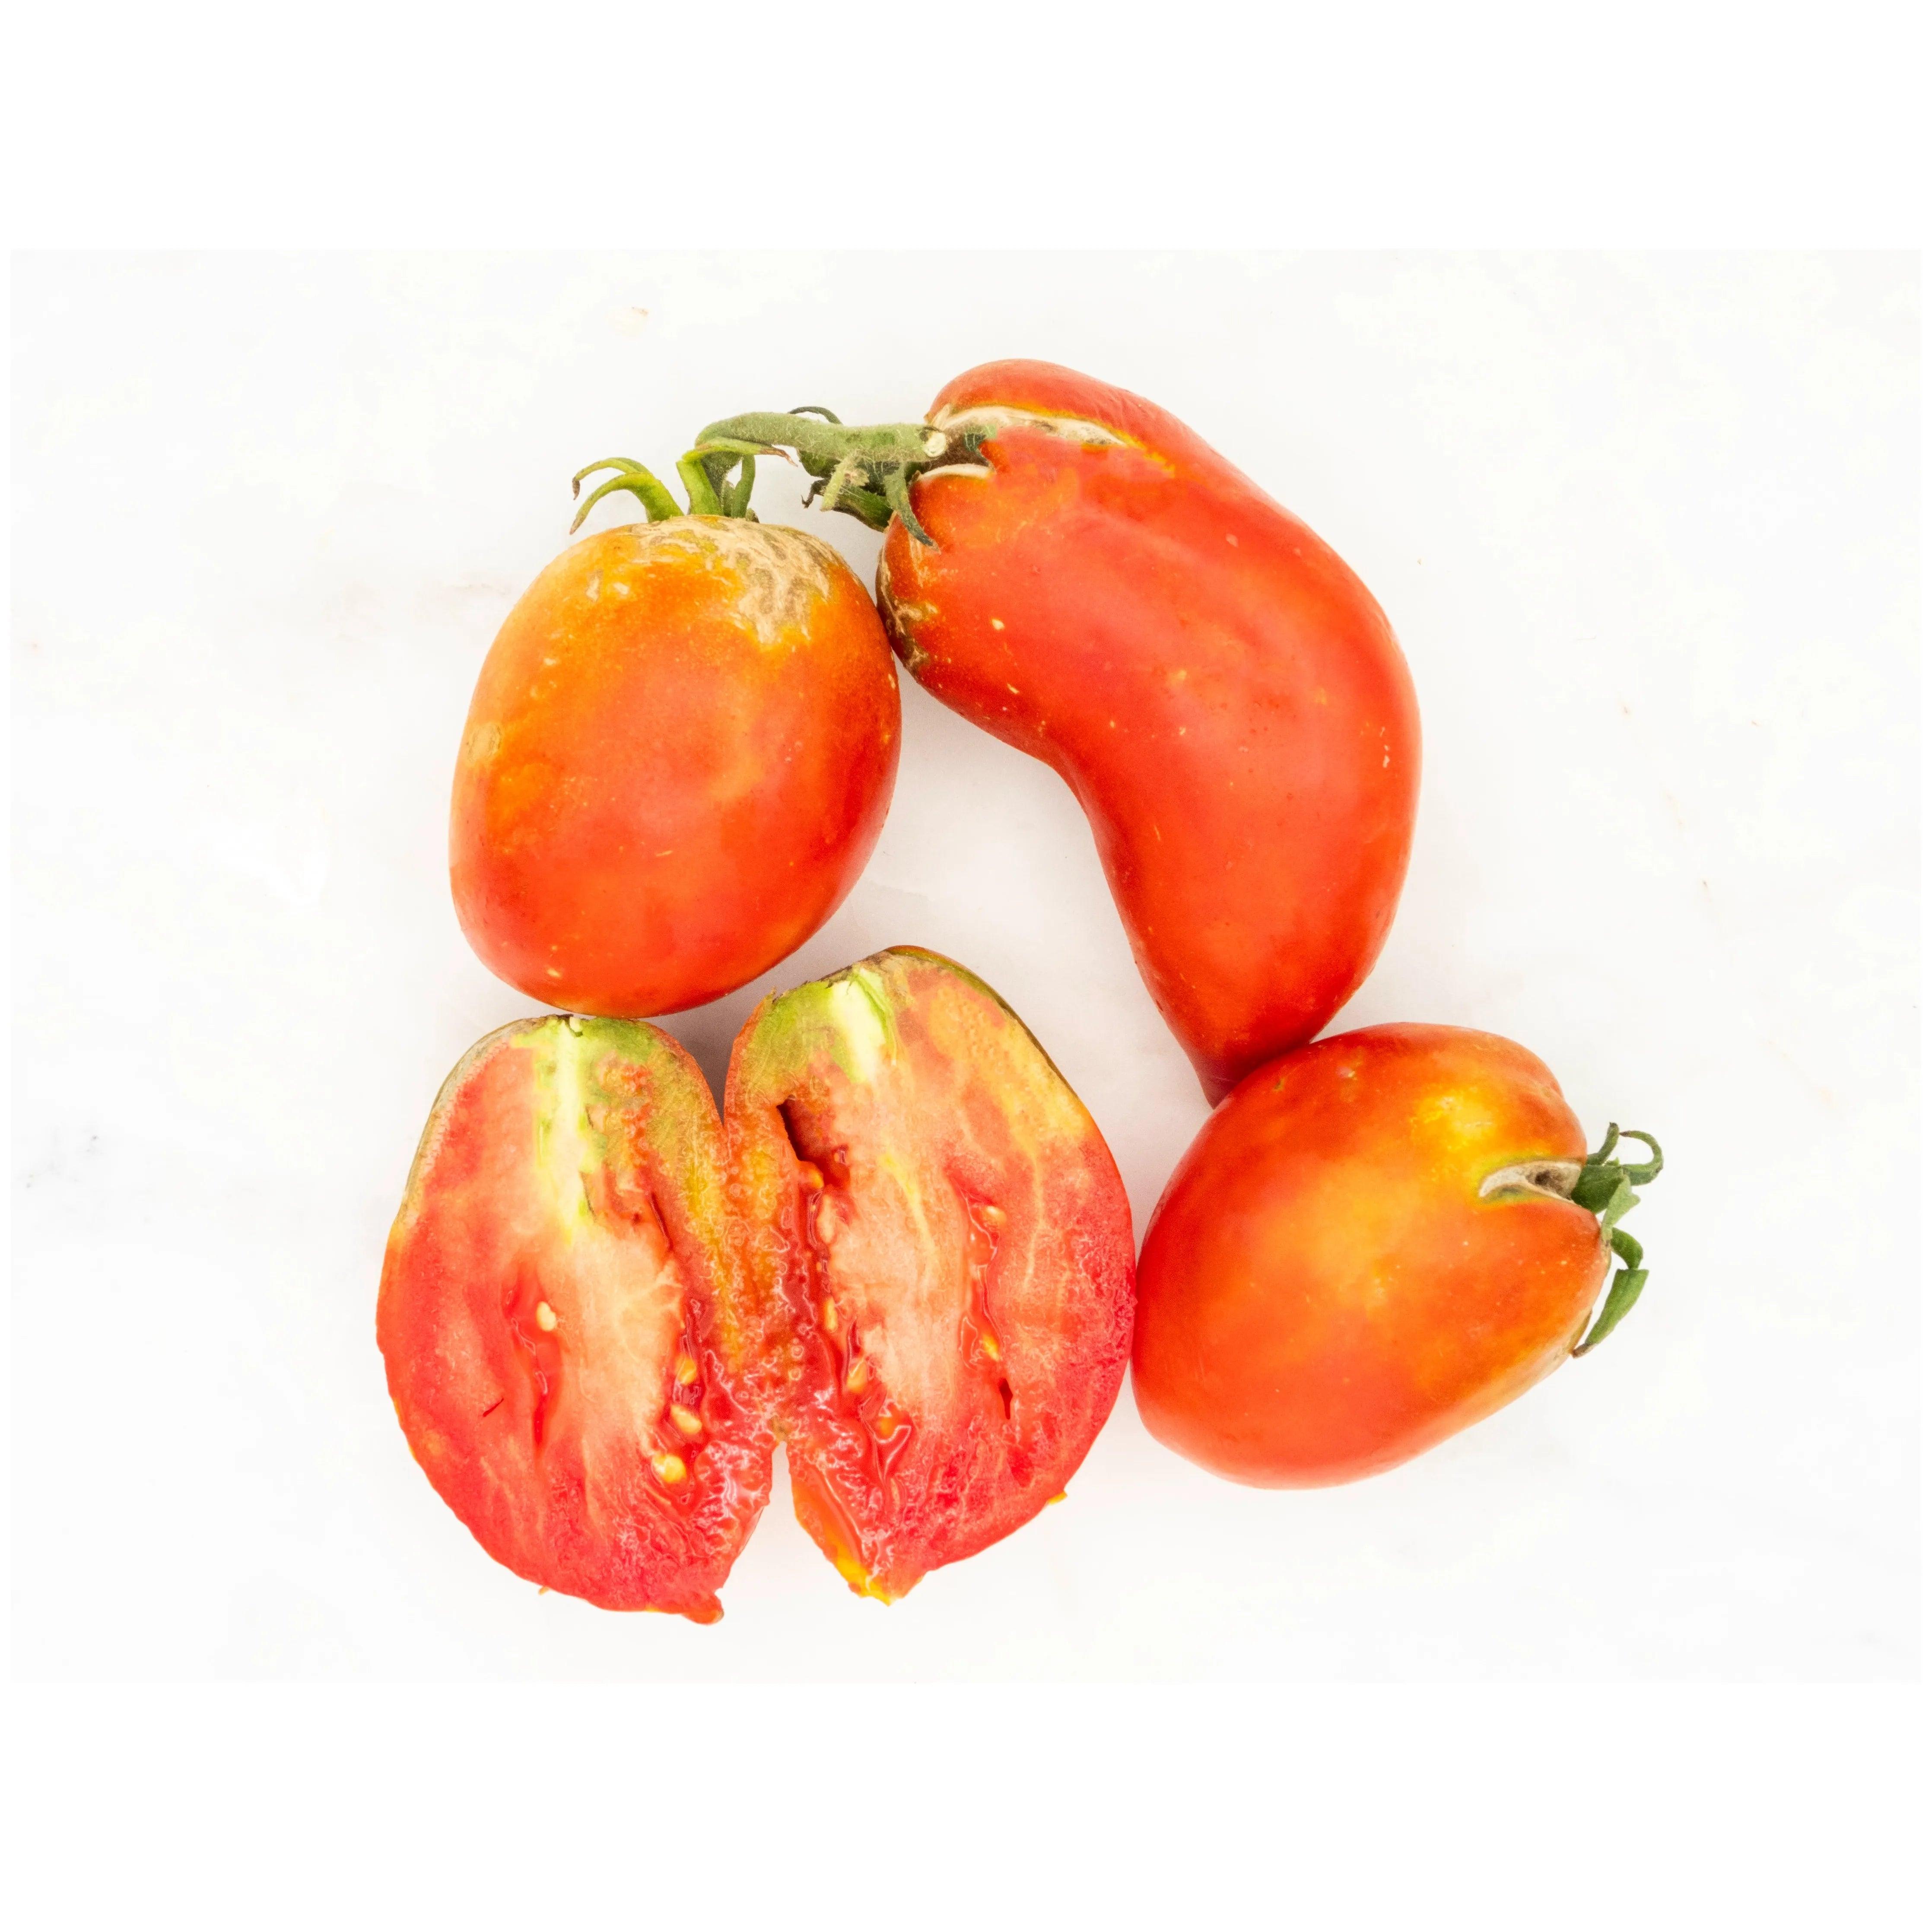 Soil-Grown Tomato Roma - Nutrient Farm